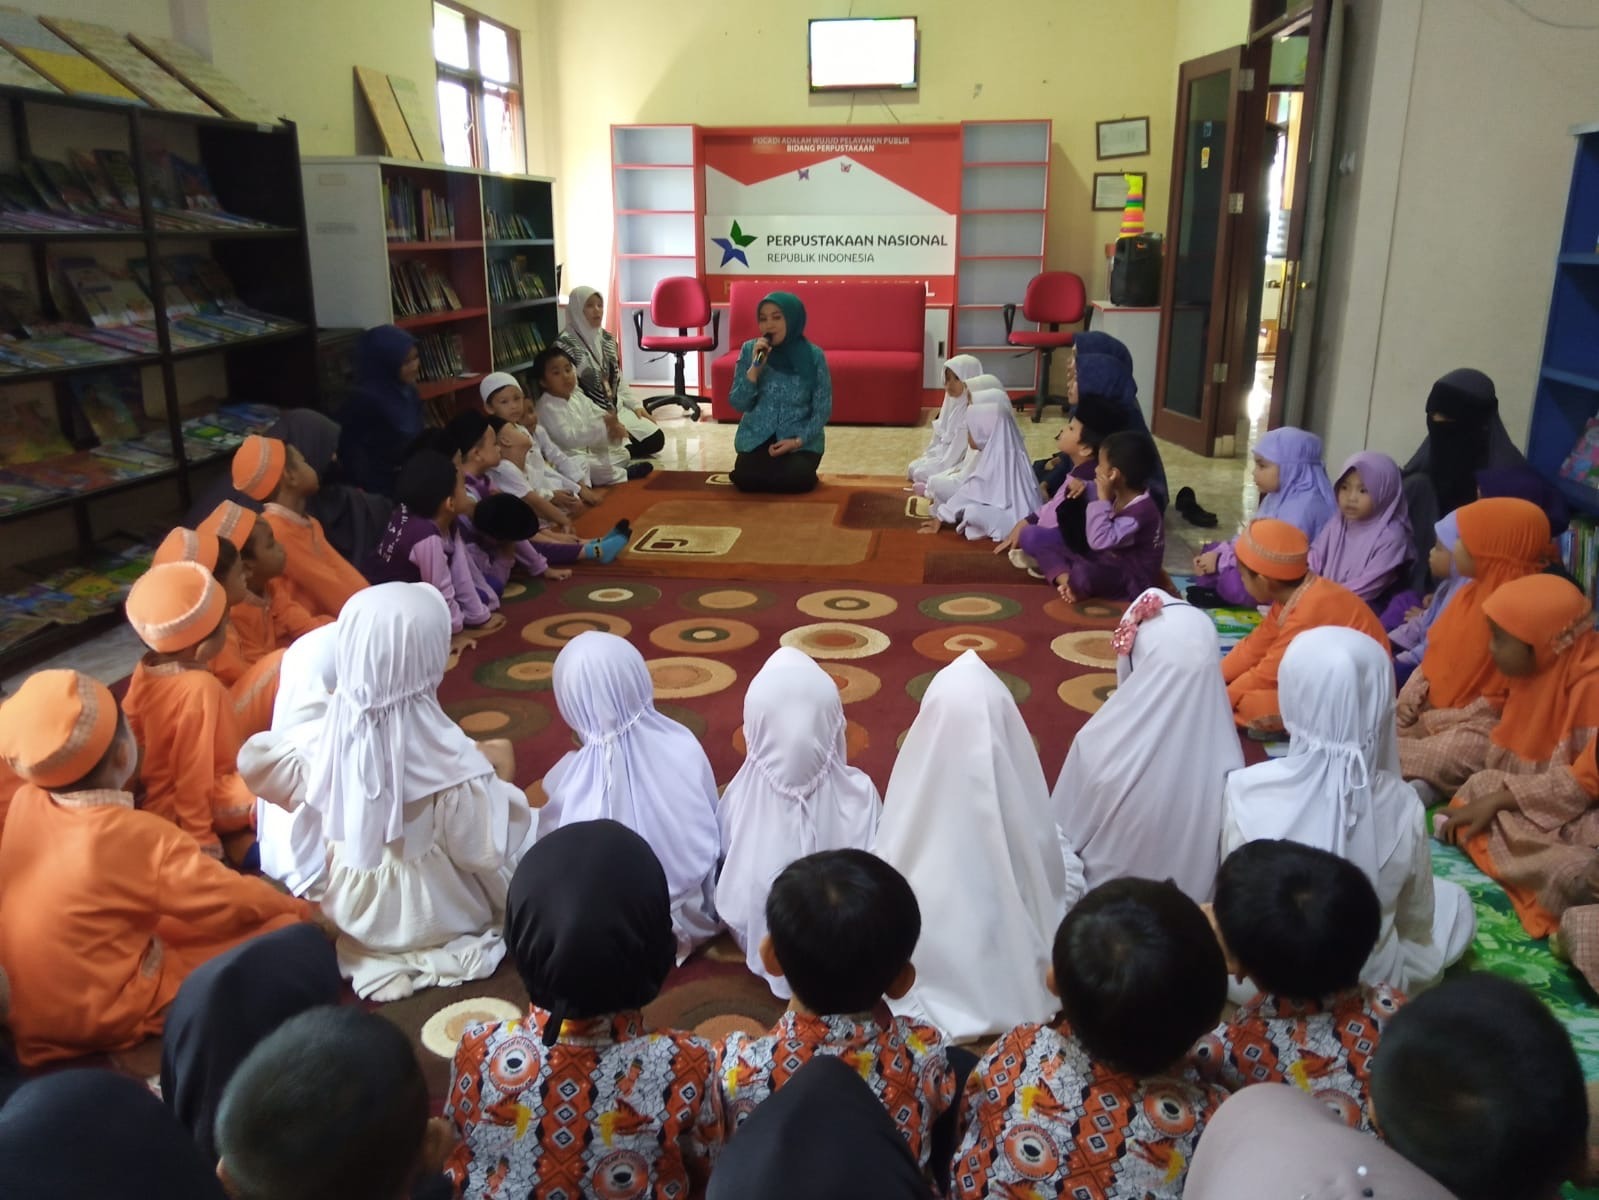 Kehadiran Bunda Literasi Liza Kurnia Hidupkan Atmosfer Literasi di Kota Pagaralam